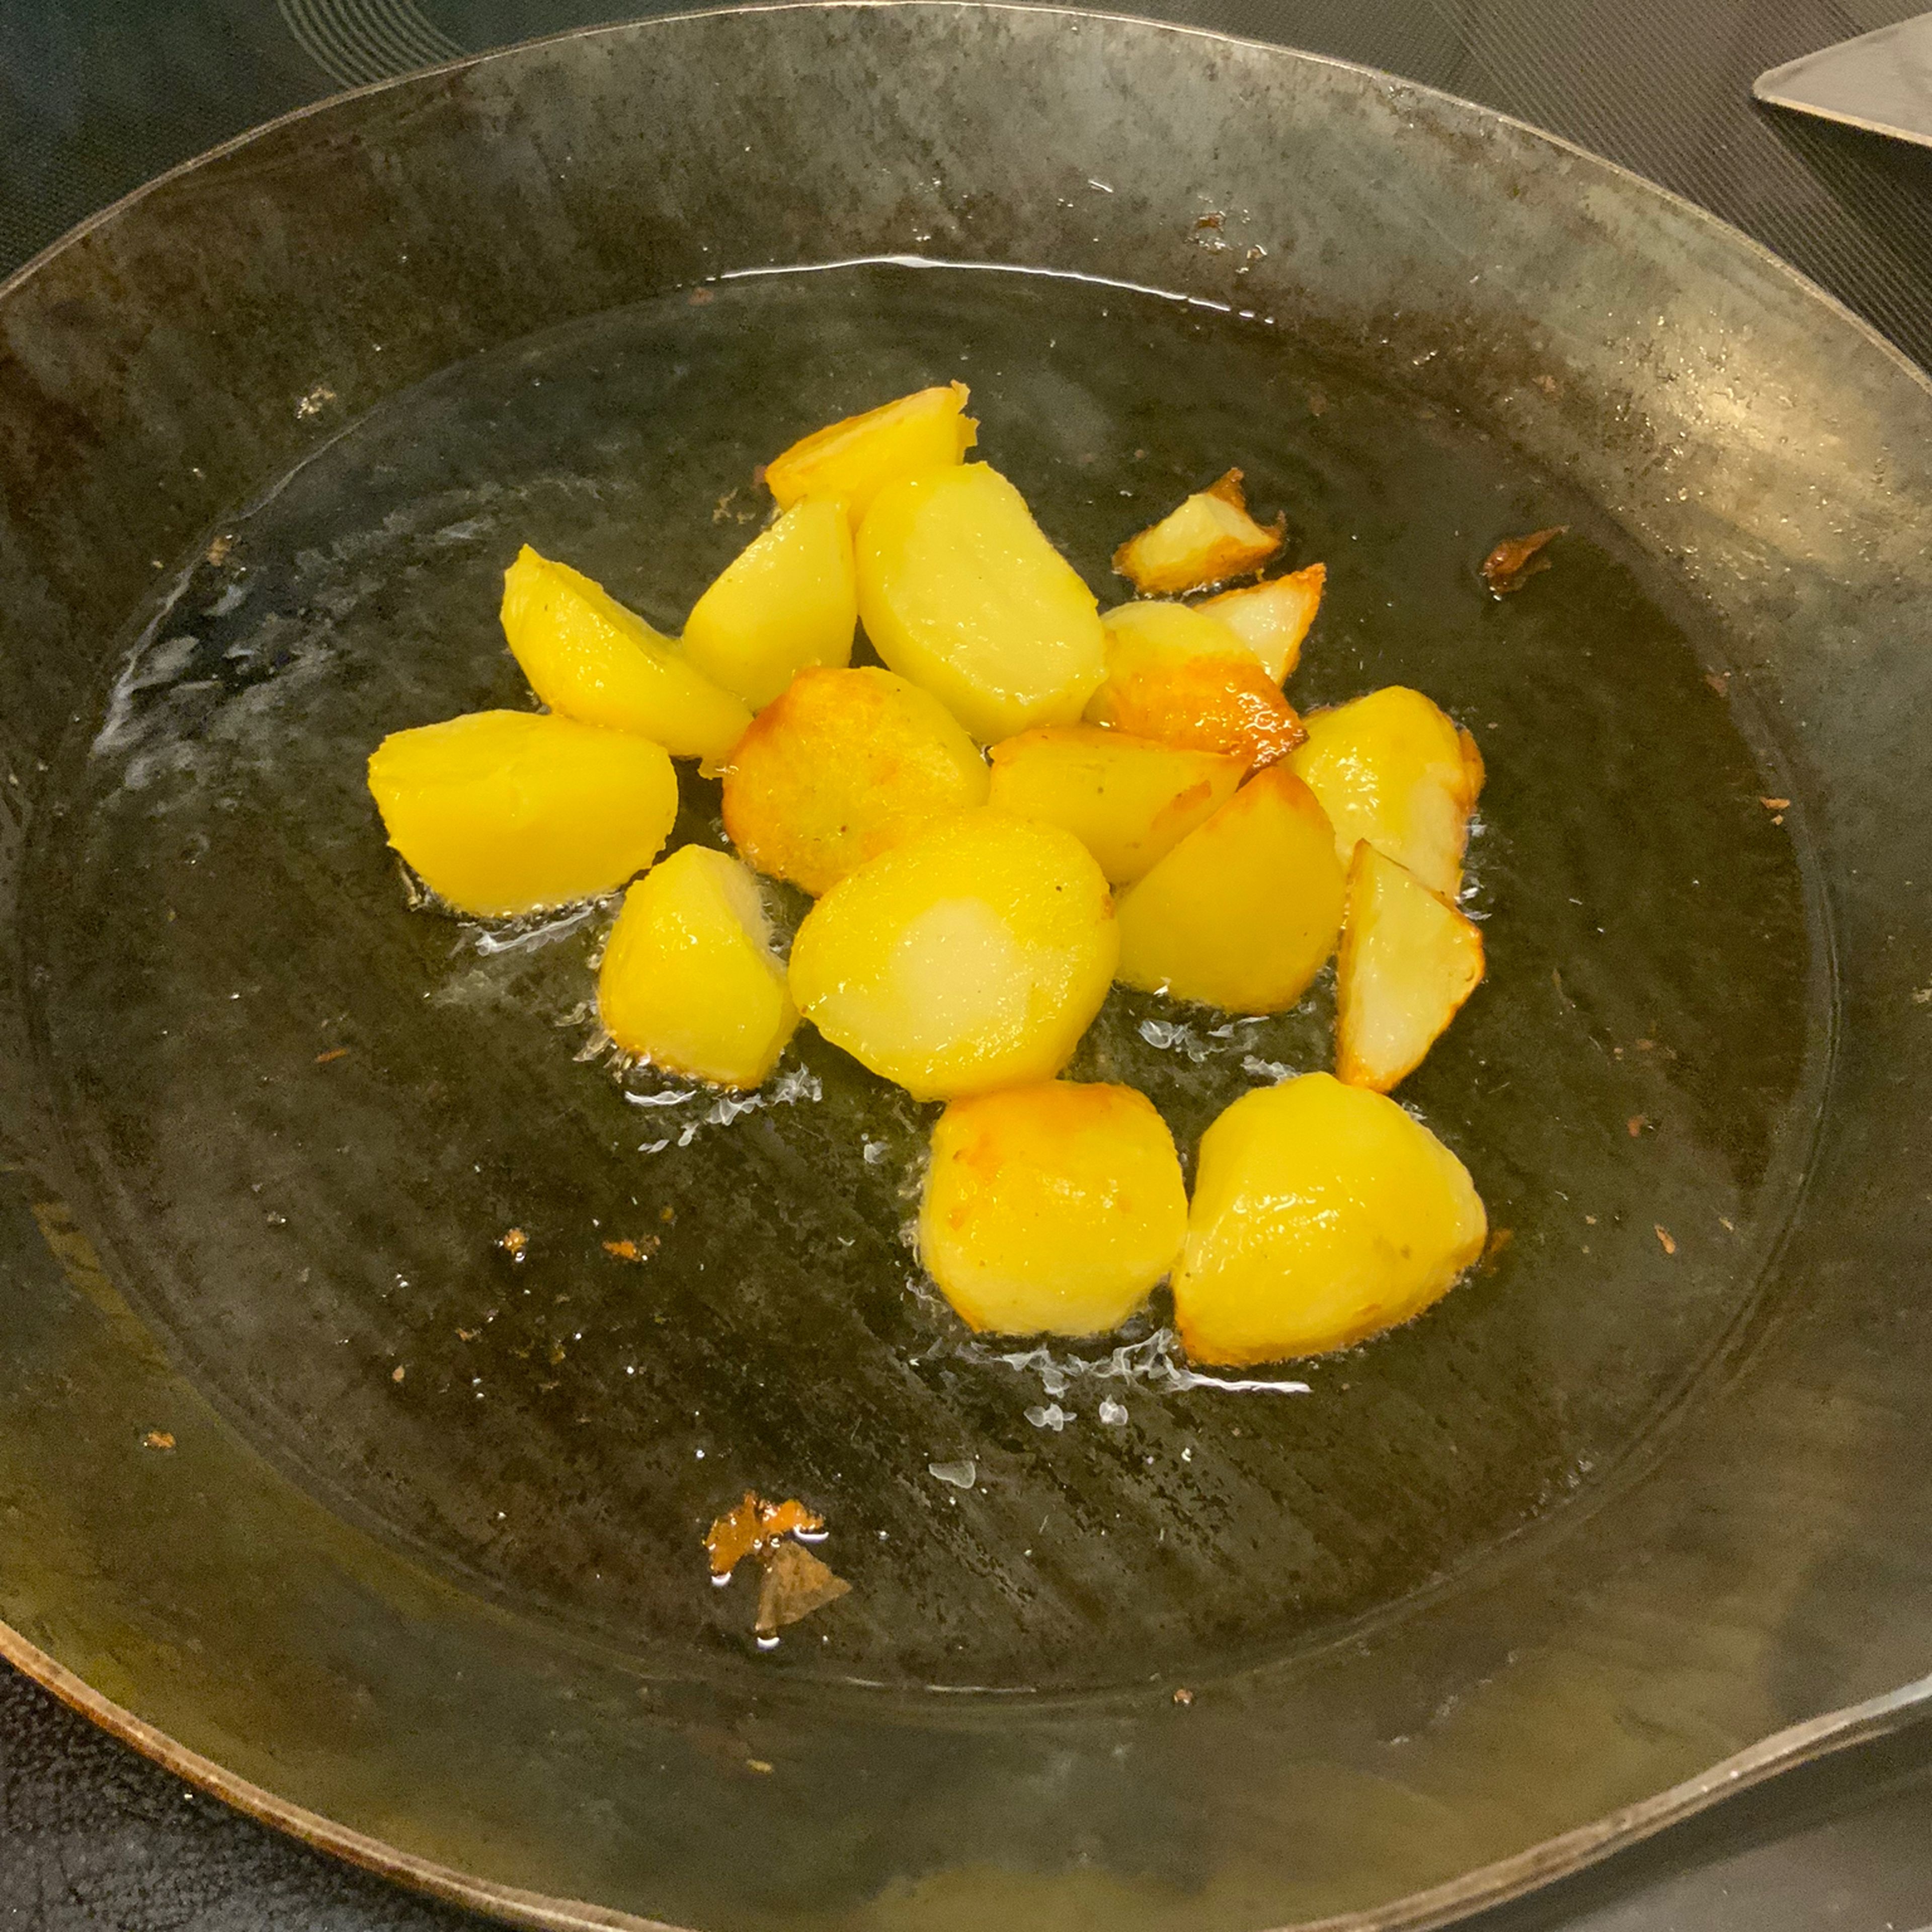 Während der Blumenkohl/Brokkoli überbäckt die Bratkartoffeln zubereiten. In einer Eisenpfanne wenig Butterschmalz schmelzen und heiß darin die Bratkartoffeln anbraten bis sie ne schöne Bräune bekommen.